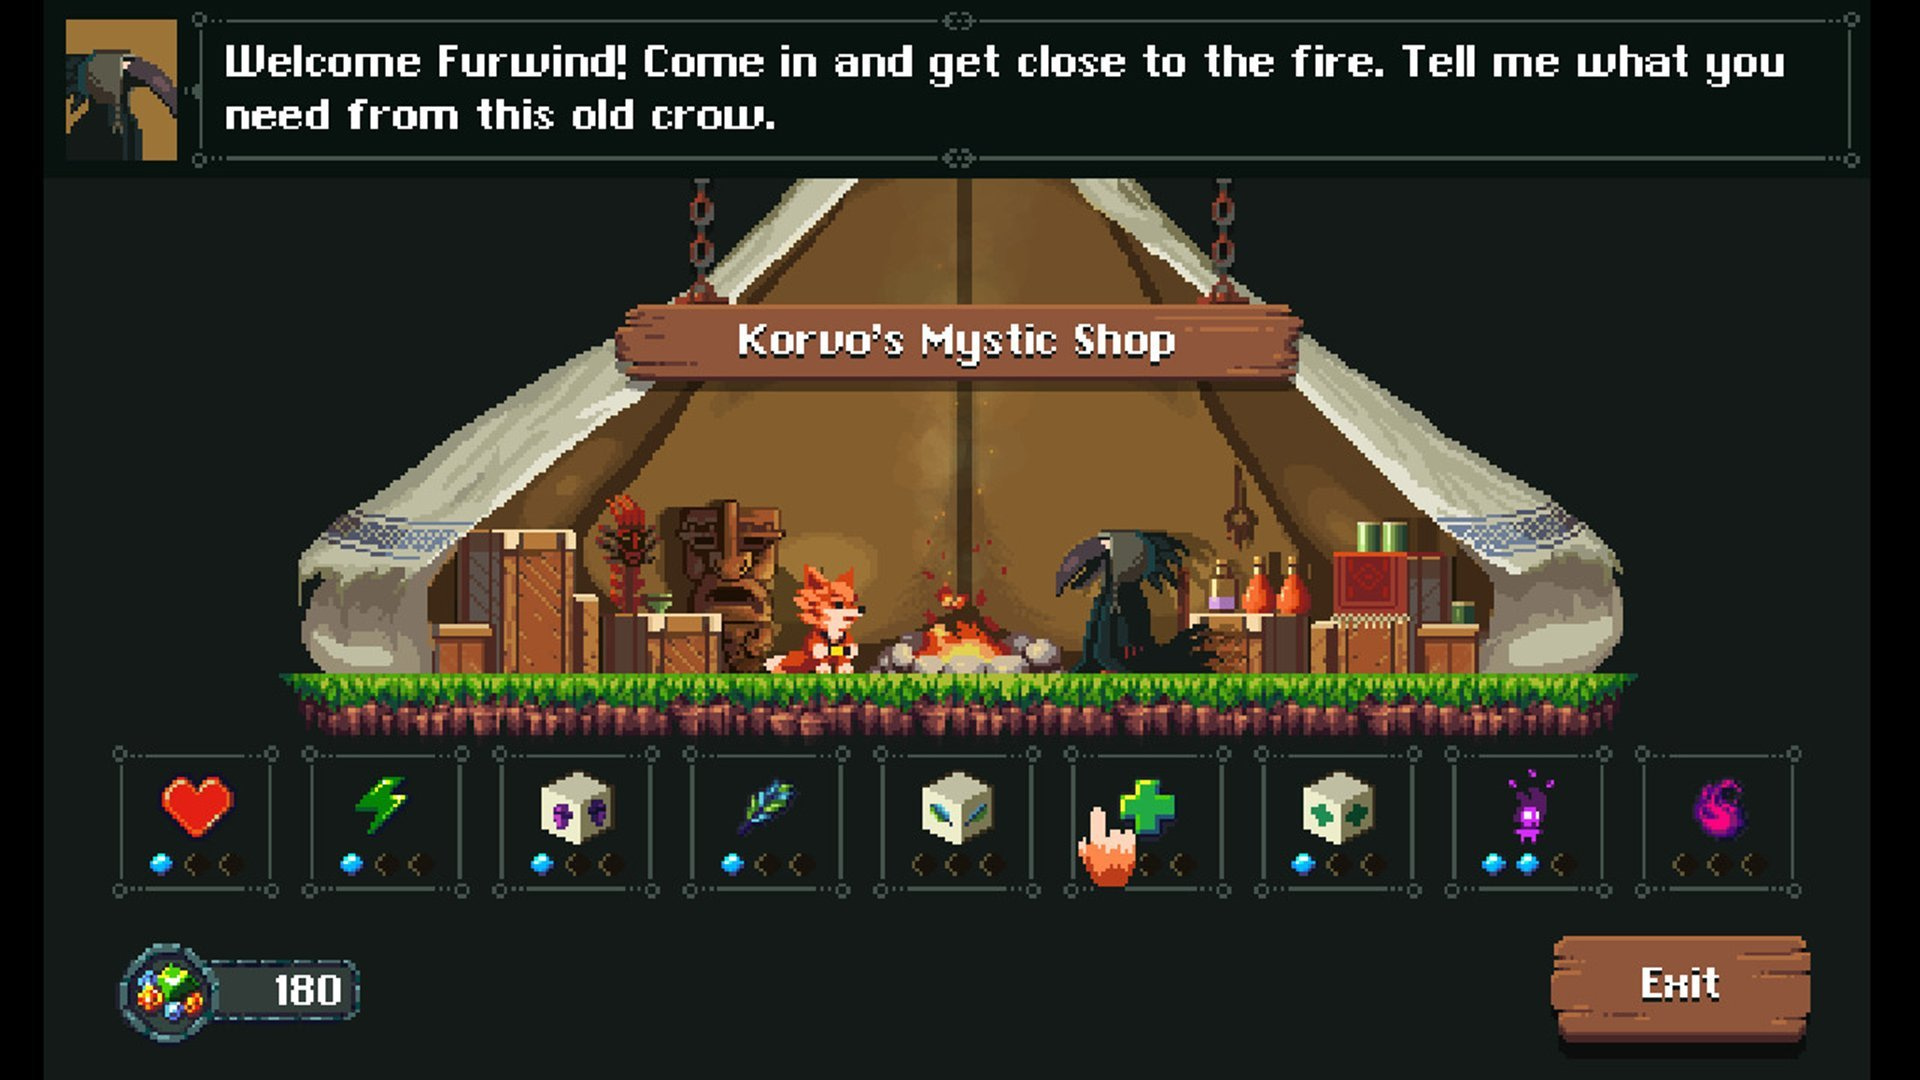 Furwind - Korvo's Mystic Shop